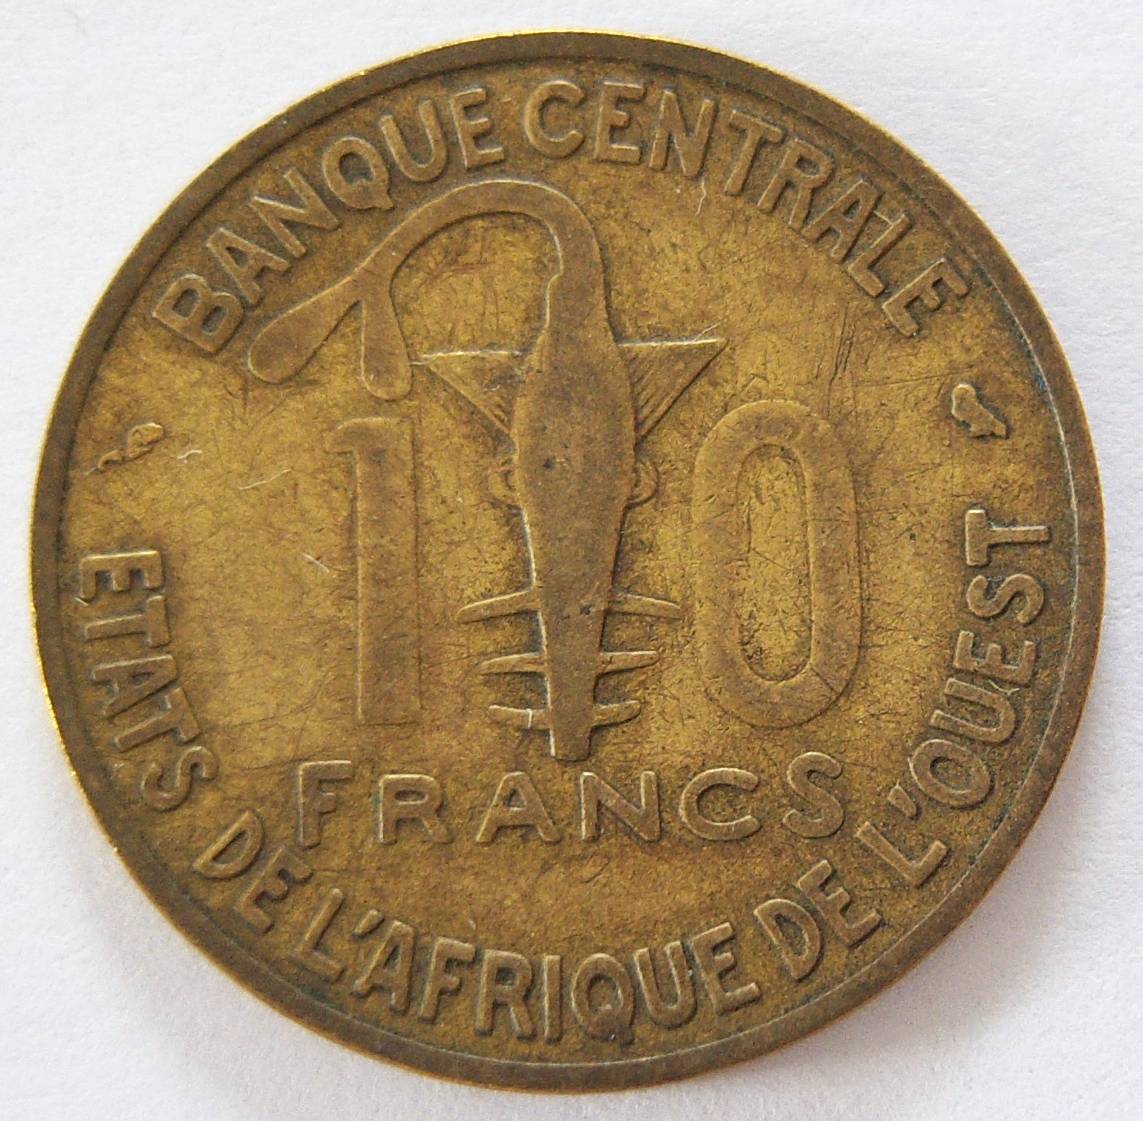  Westafrikanische Staaten 10 Francs 1959   